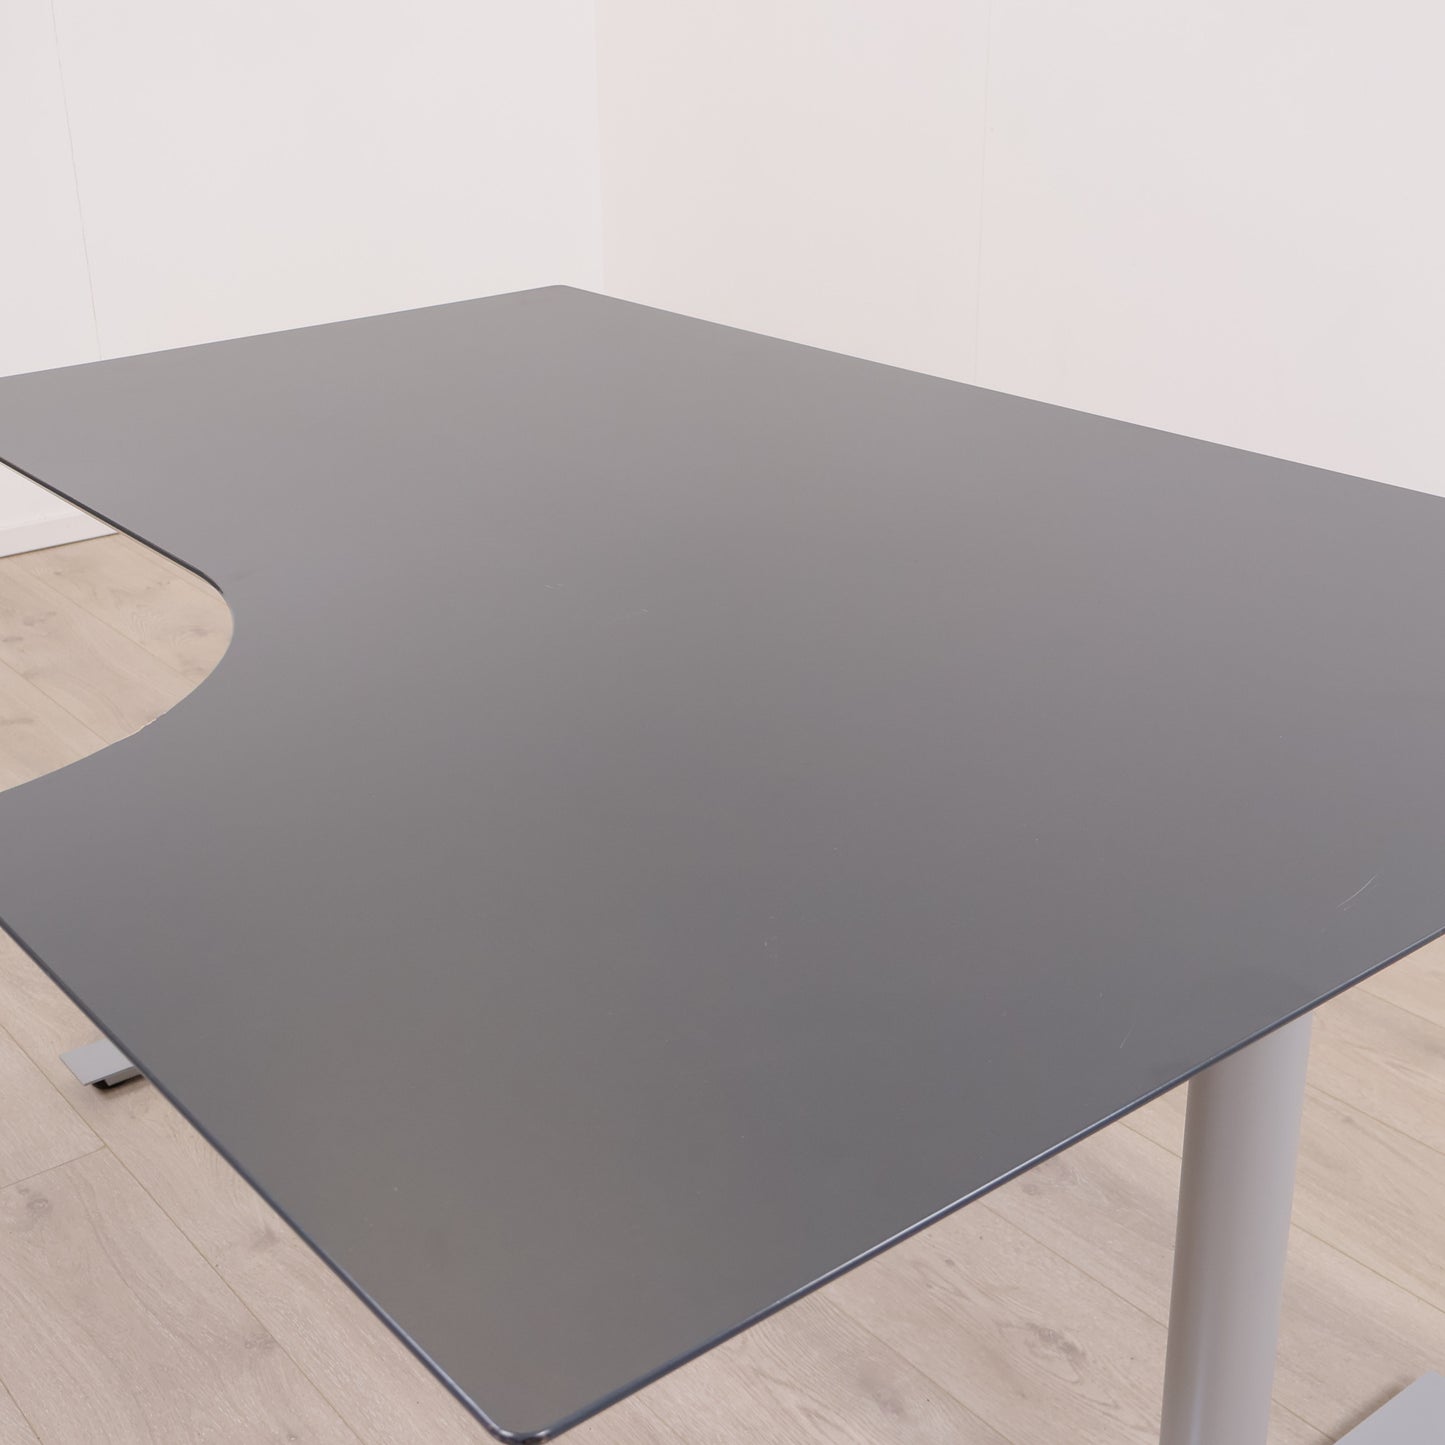 Sort/grå skrivebord med høyresving